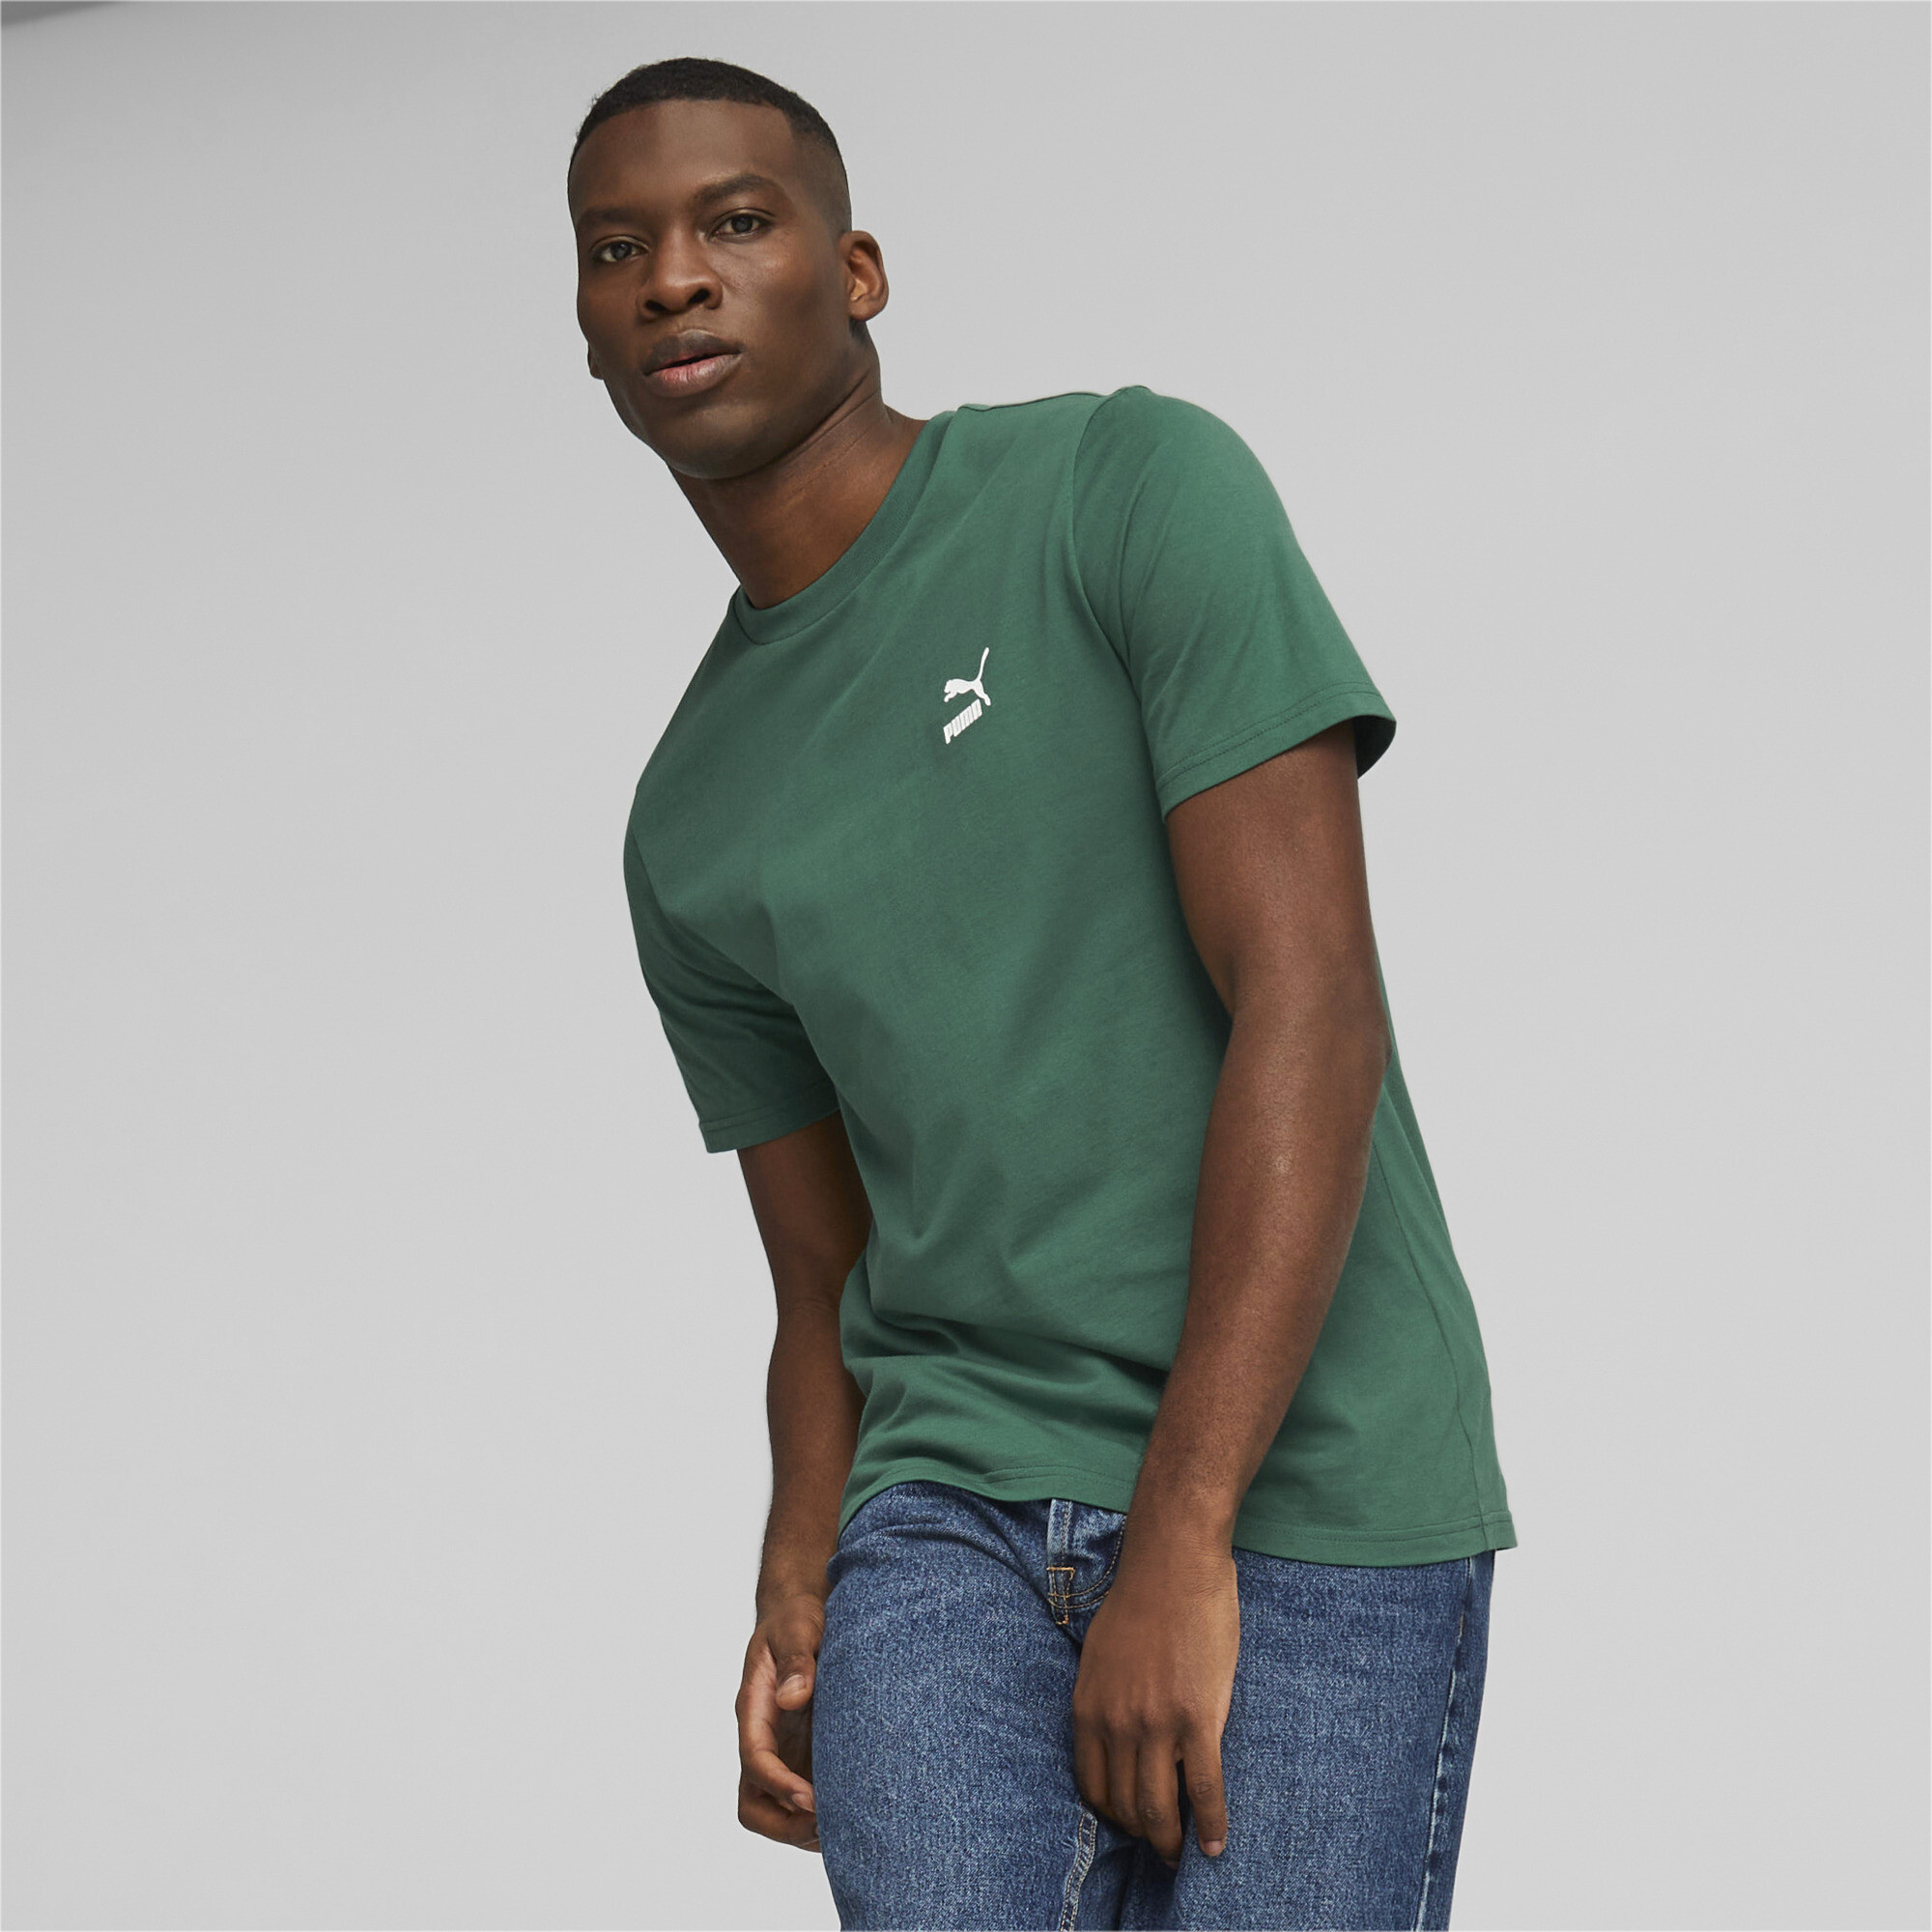 Men's PUMA Classics Small Logo T-Shirt Men In 40 - Green, Size